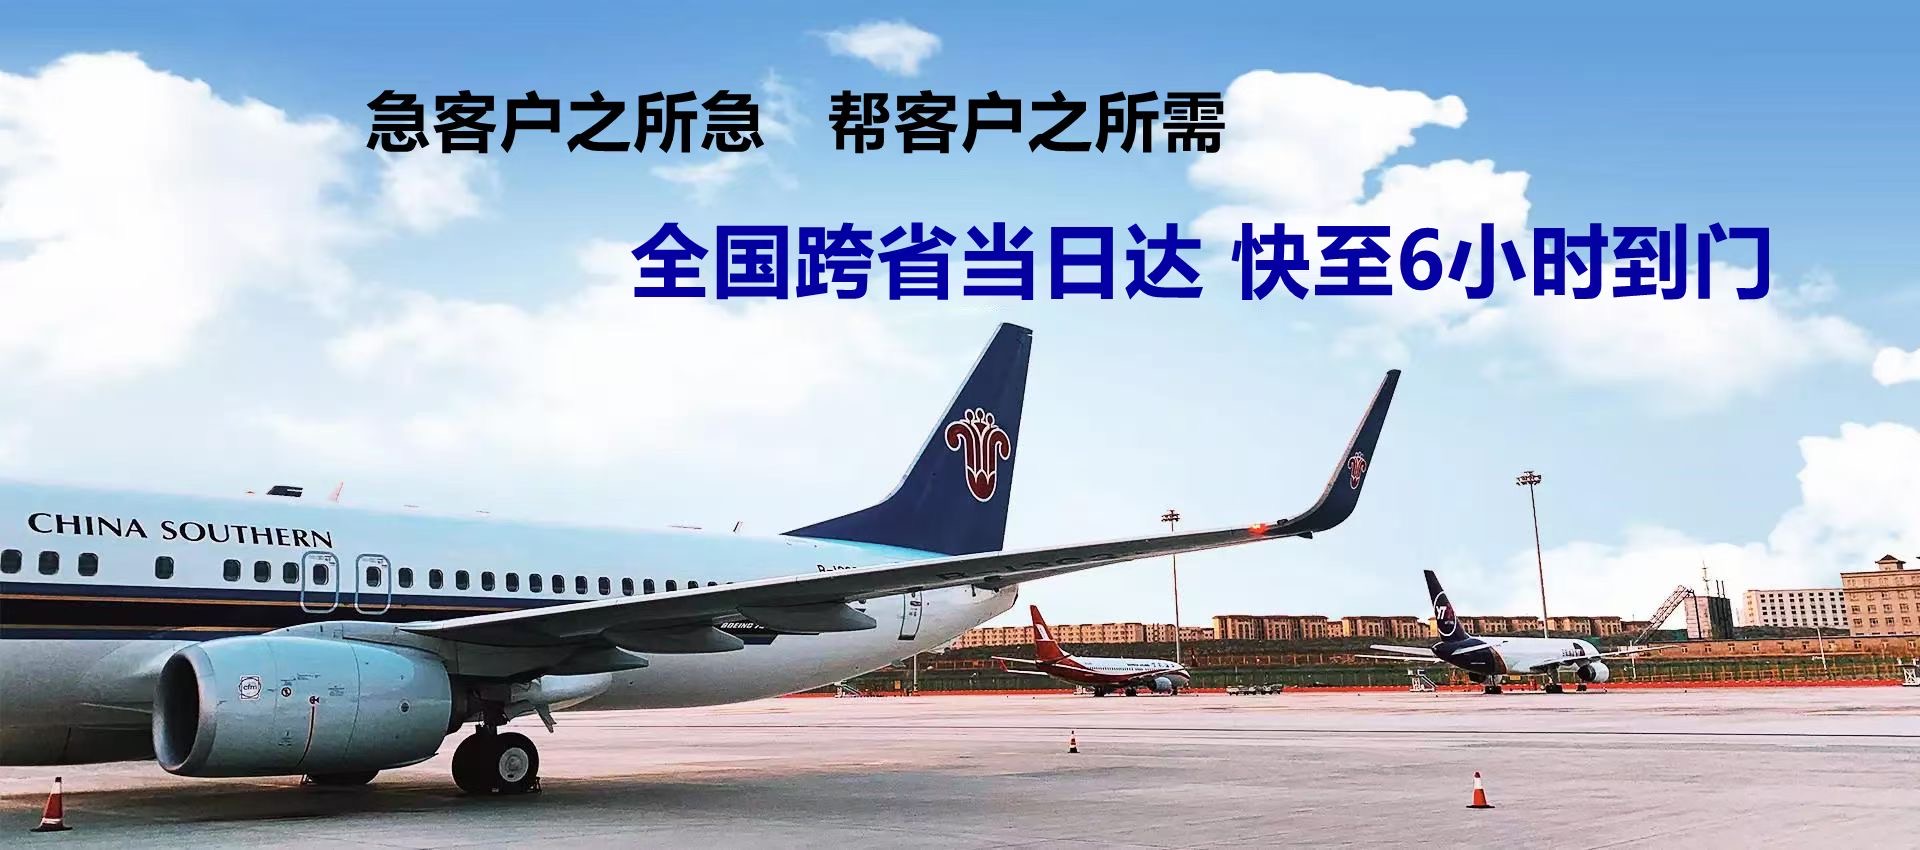 郴州市-广州机场航空货运-限时达空运物流公司